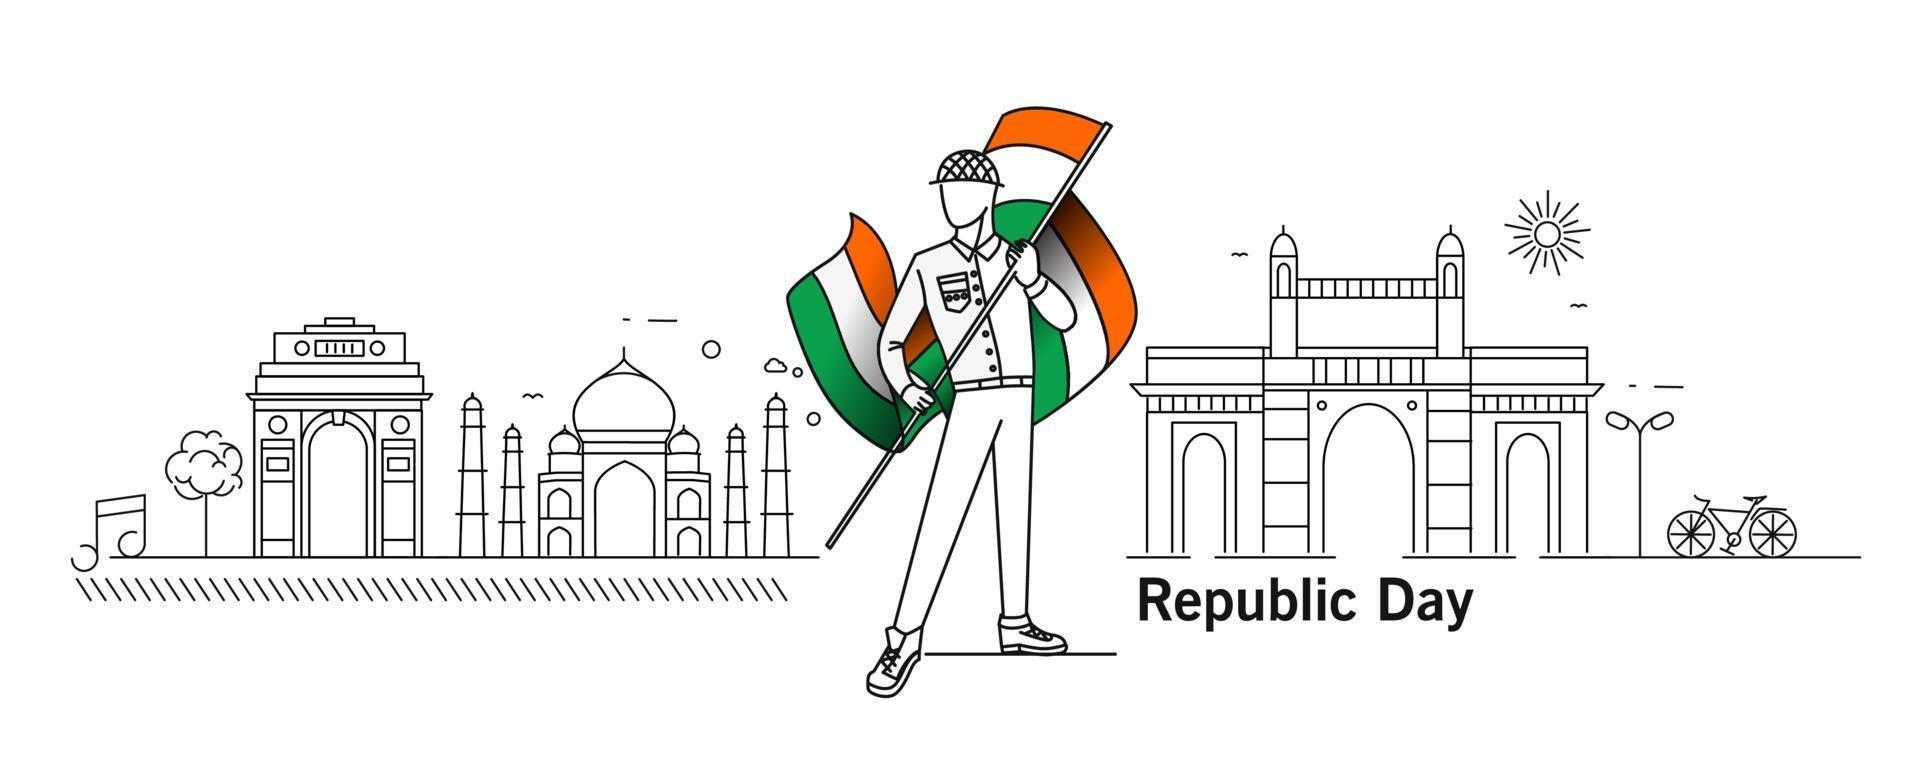 26 januari concept van de republiekdag met een jongen die de indische vlag houdt van india poort taj mahal gateway van india mumbai. vector